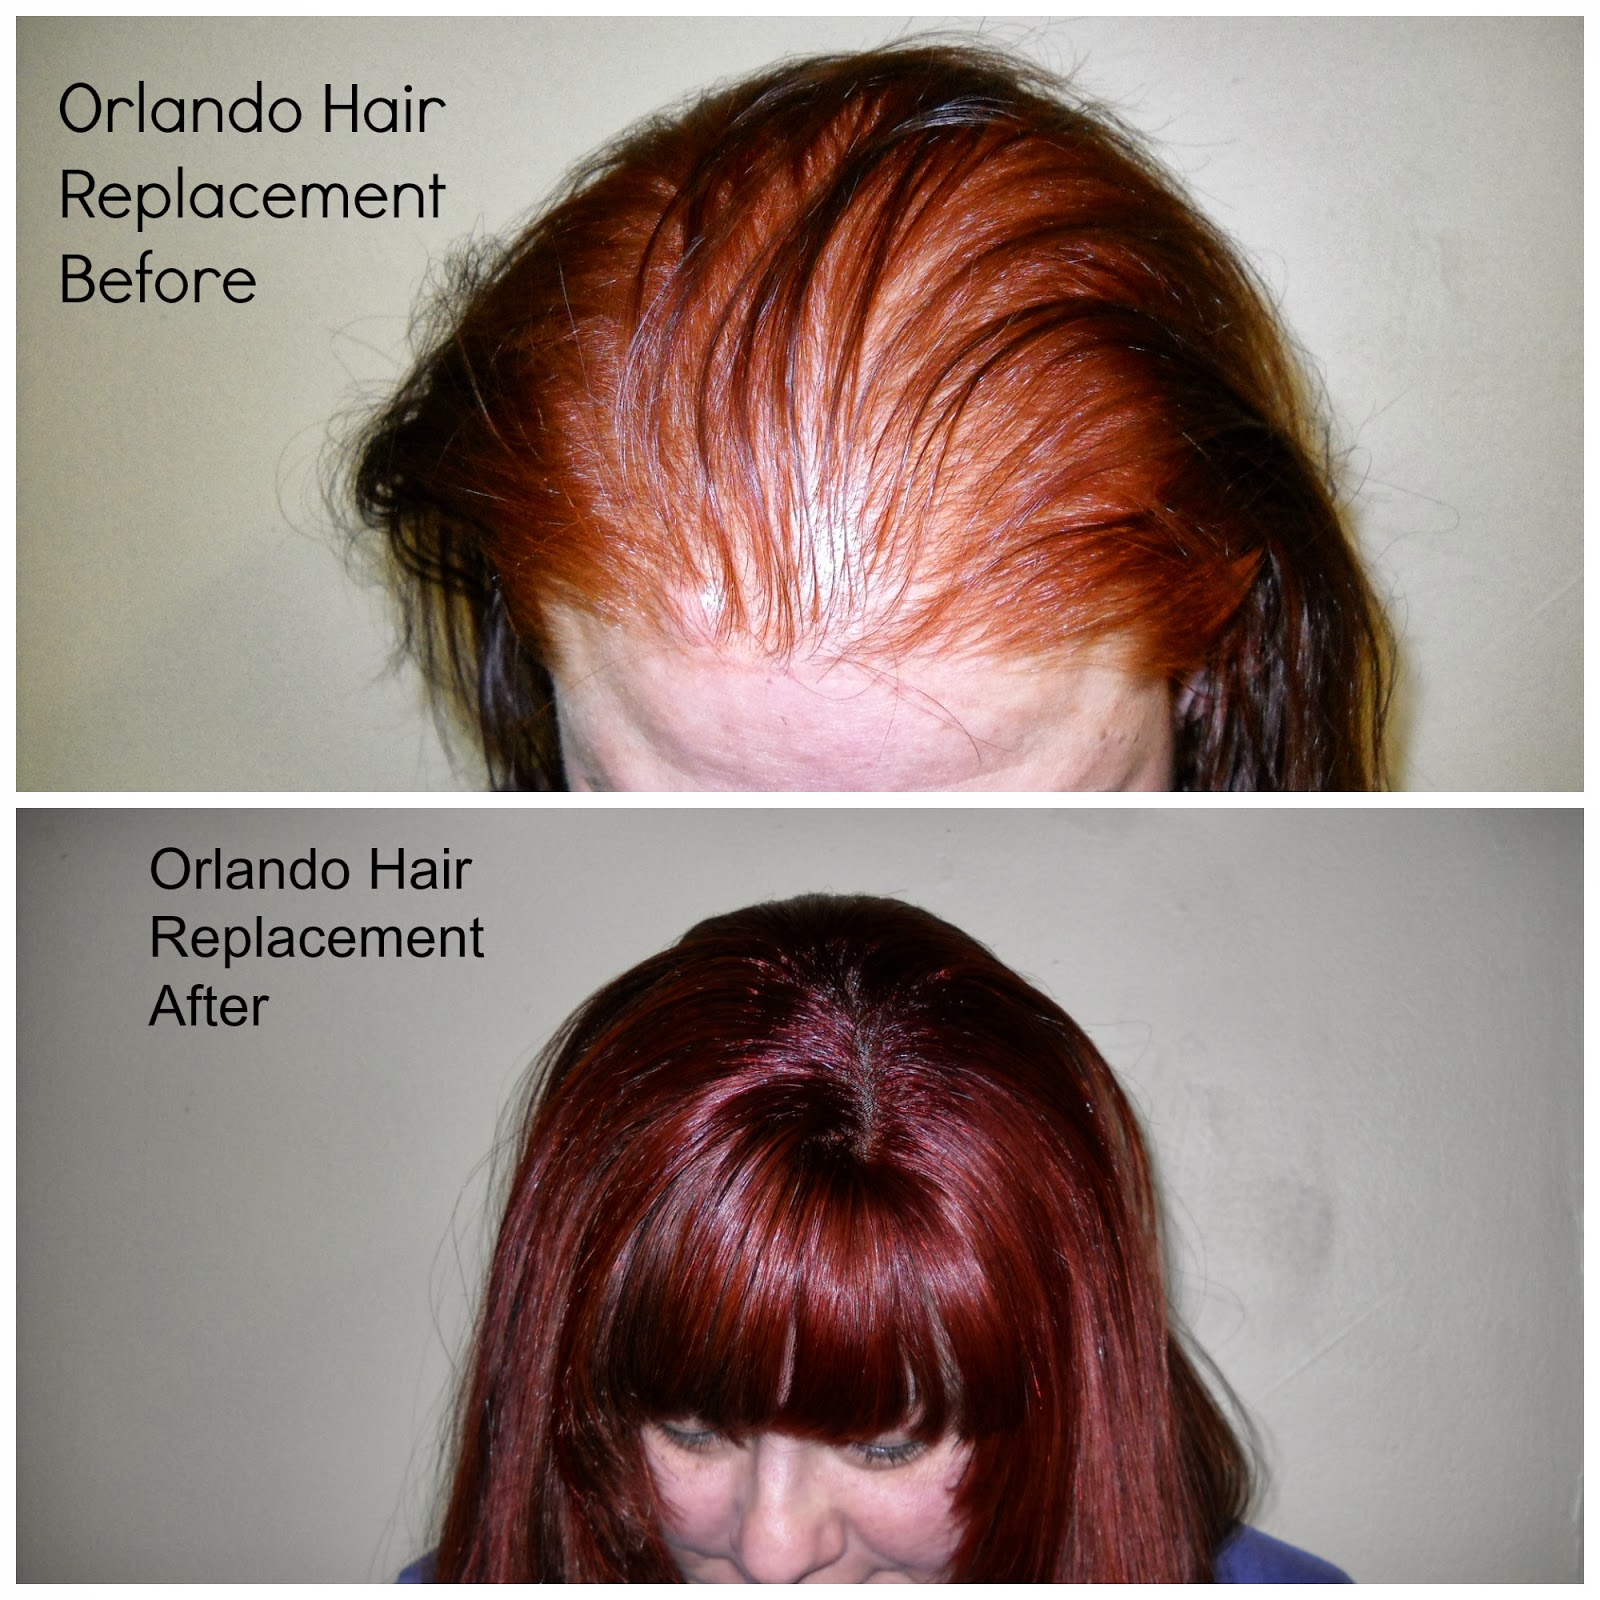 Orlando Hair Salon Secrets For Hair Growth